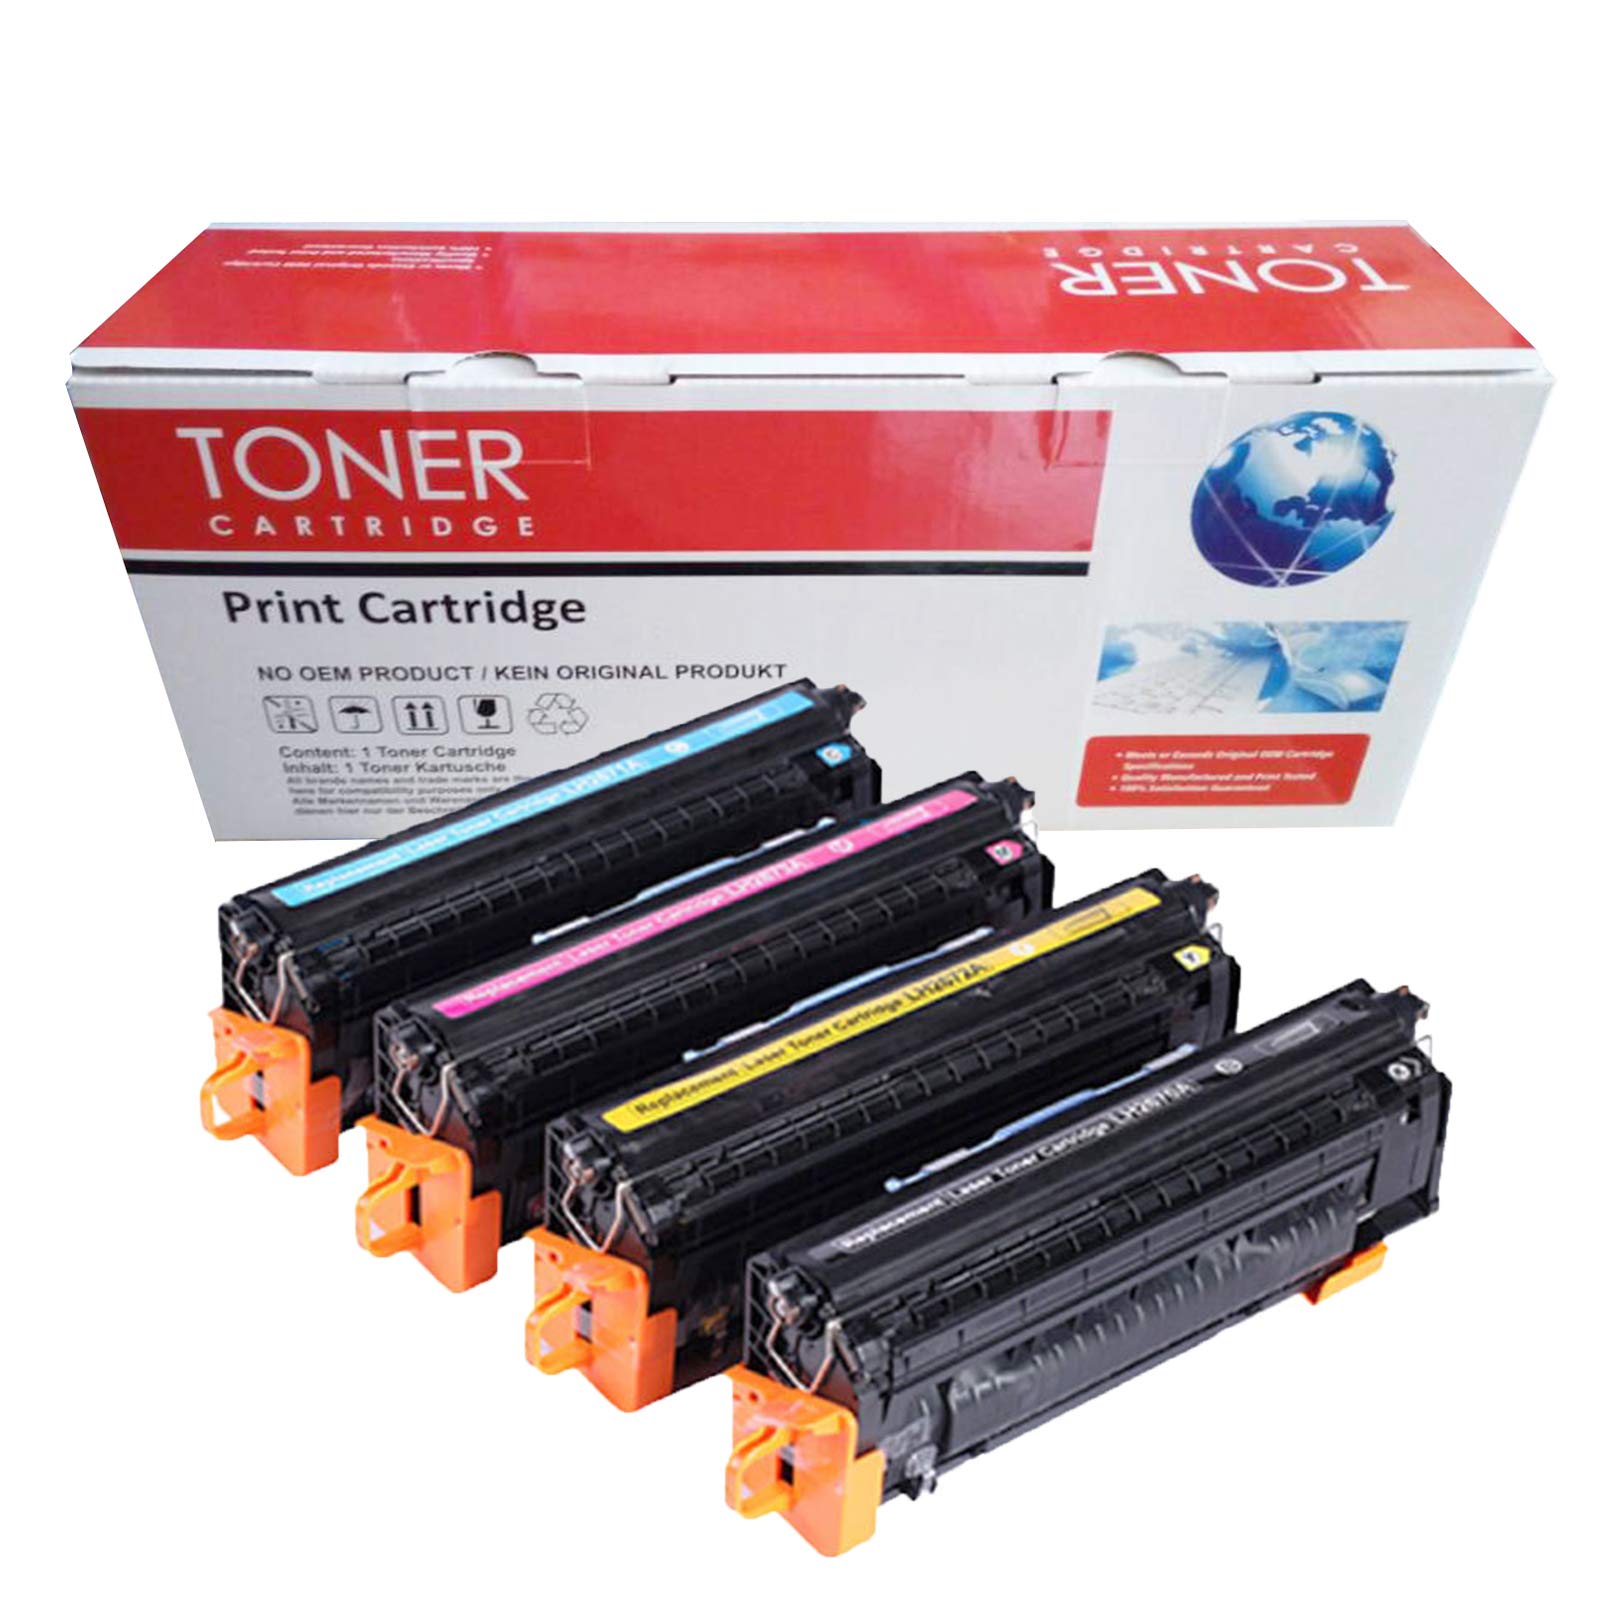 Toner Cartridge 308A Q2670A (1BK) | 309A Q2671A Q2672A Q2673A (1C+1Y+1M) Compatible with HP Color Laserjet 3500 3500N 3550 3550N 3700 3700N 3700DN 3700DTN Printer-4-colors